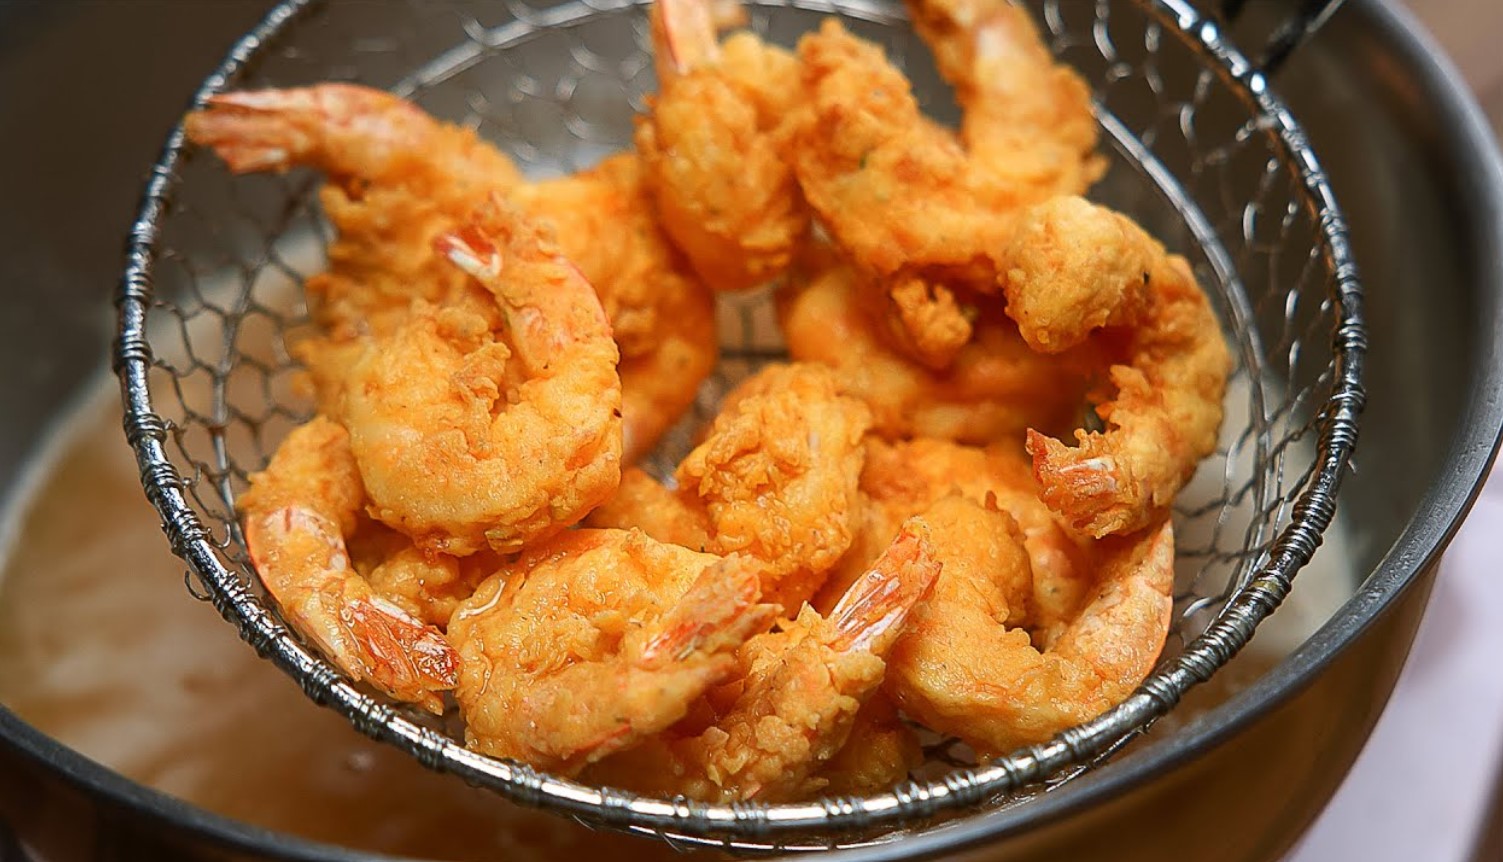 Delicious Fried Shrimp Recipe